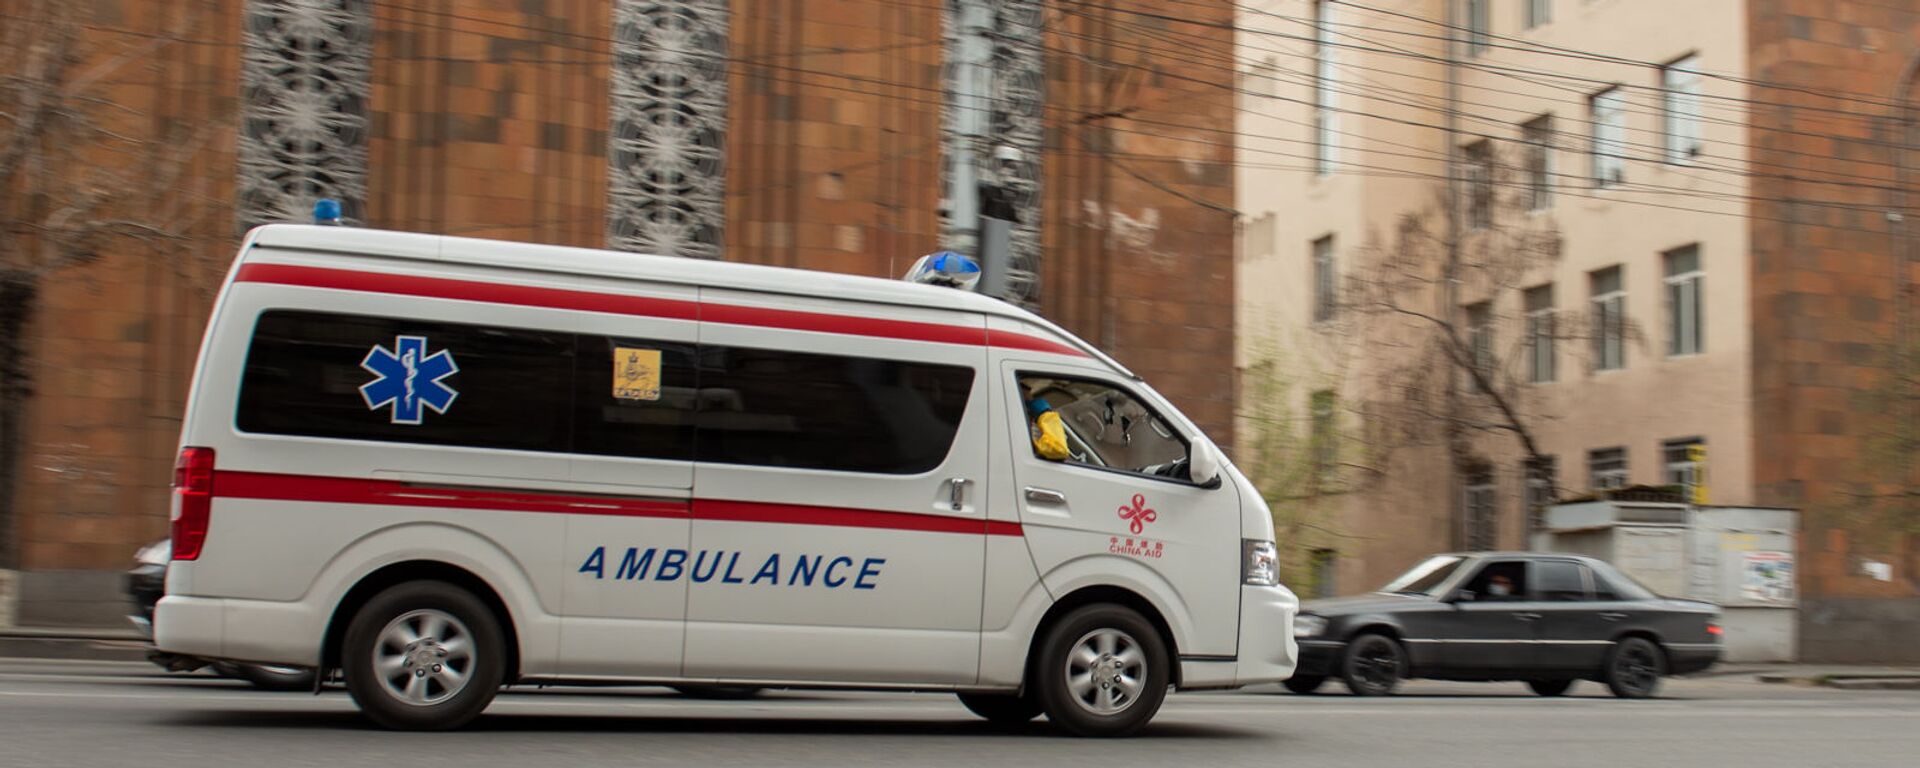 Машина скорой помощи во время чрезвычайной ситуации (25 марта 2020). Ереван - Sputnik Армения, 1920, 15.12.2021